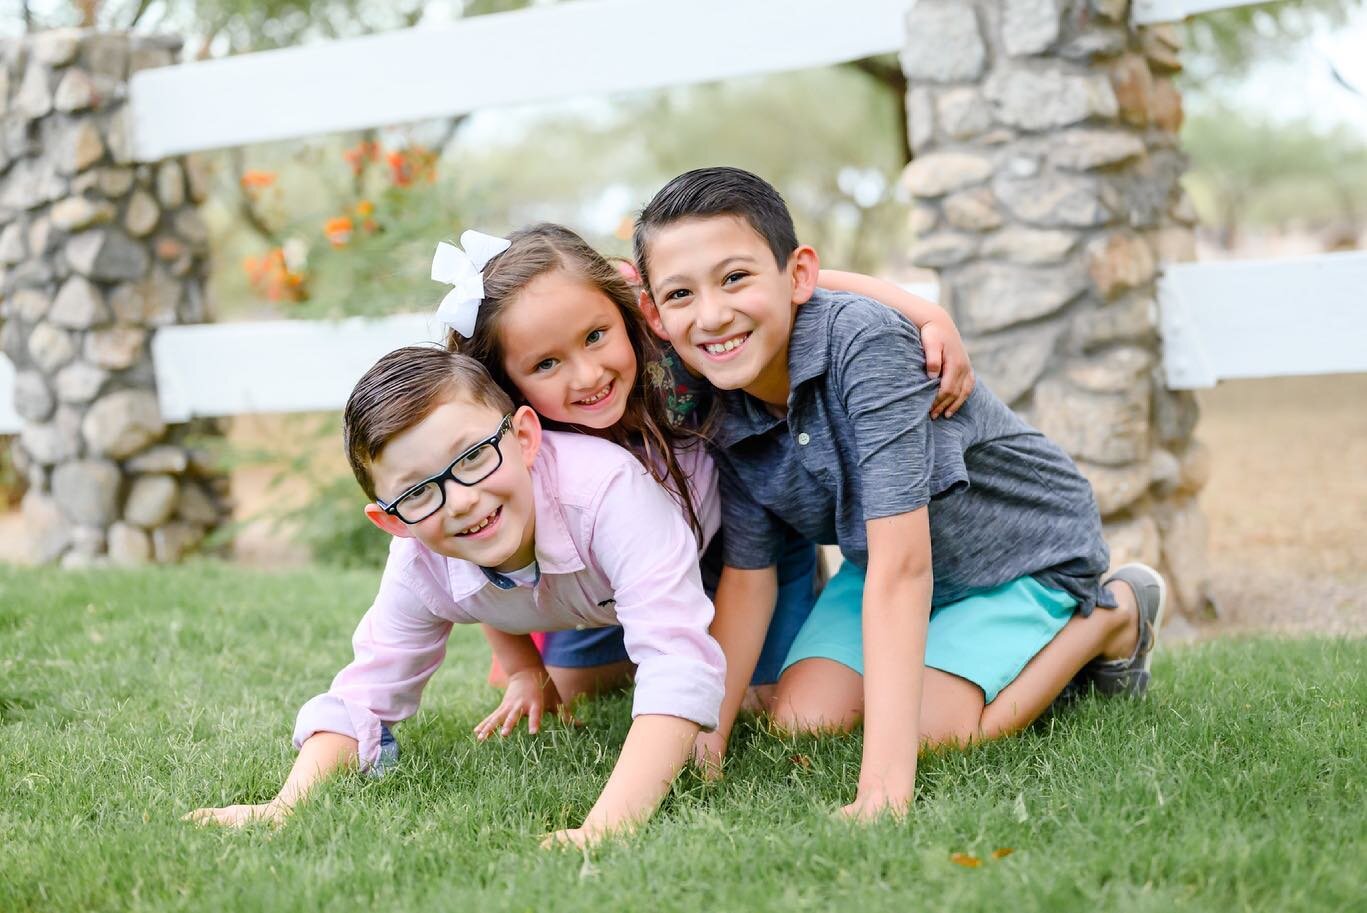 Cutie cousins 🥰#allisonholstromphotography #sunshinesister #tucsonfamilyportraits